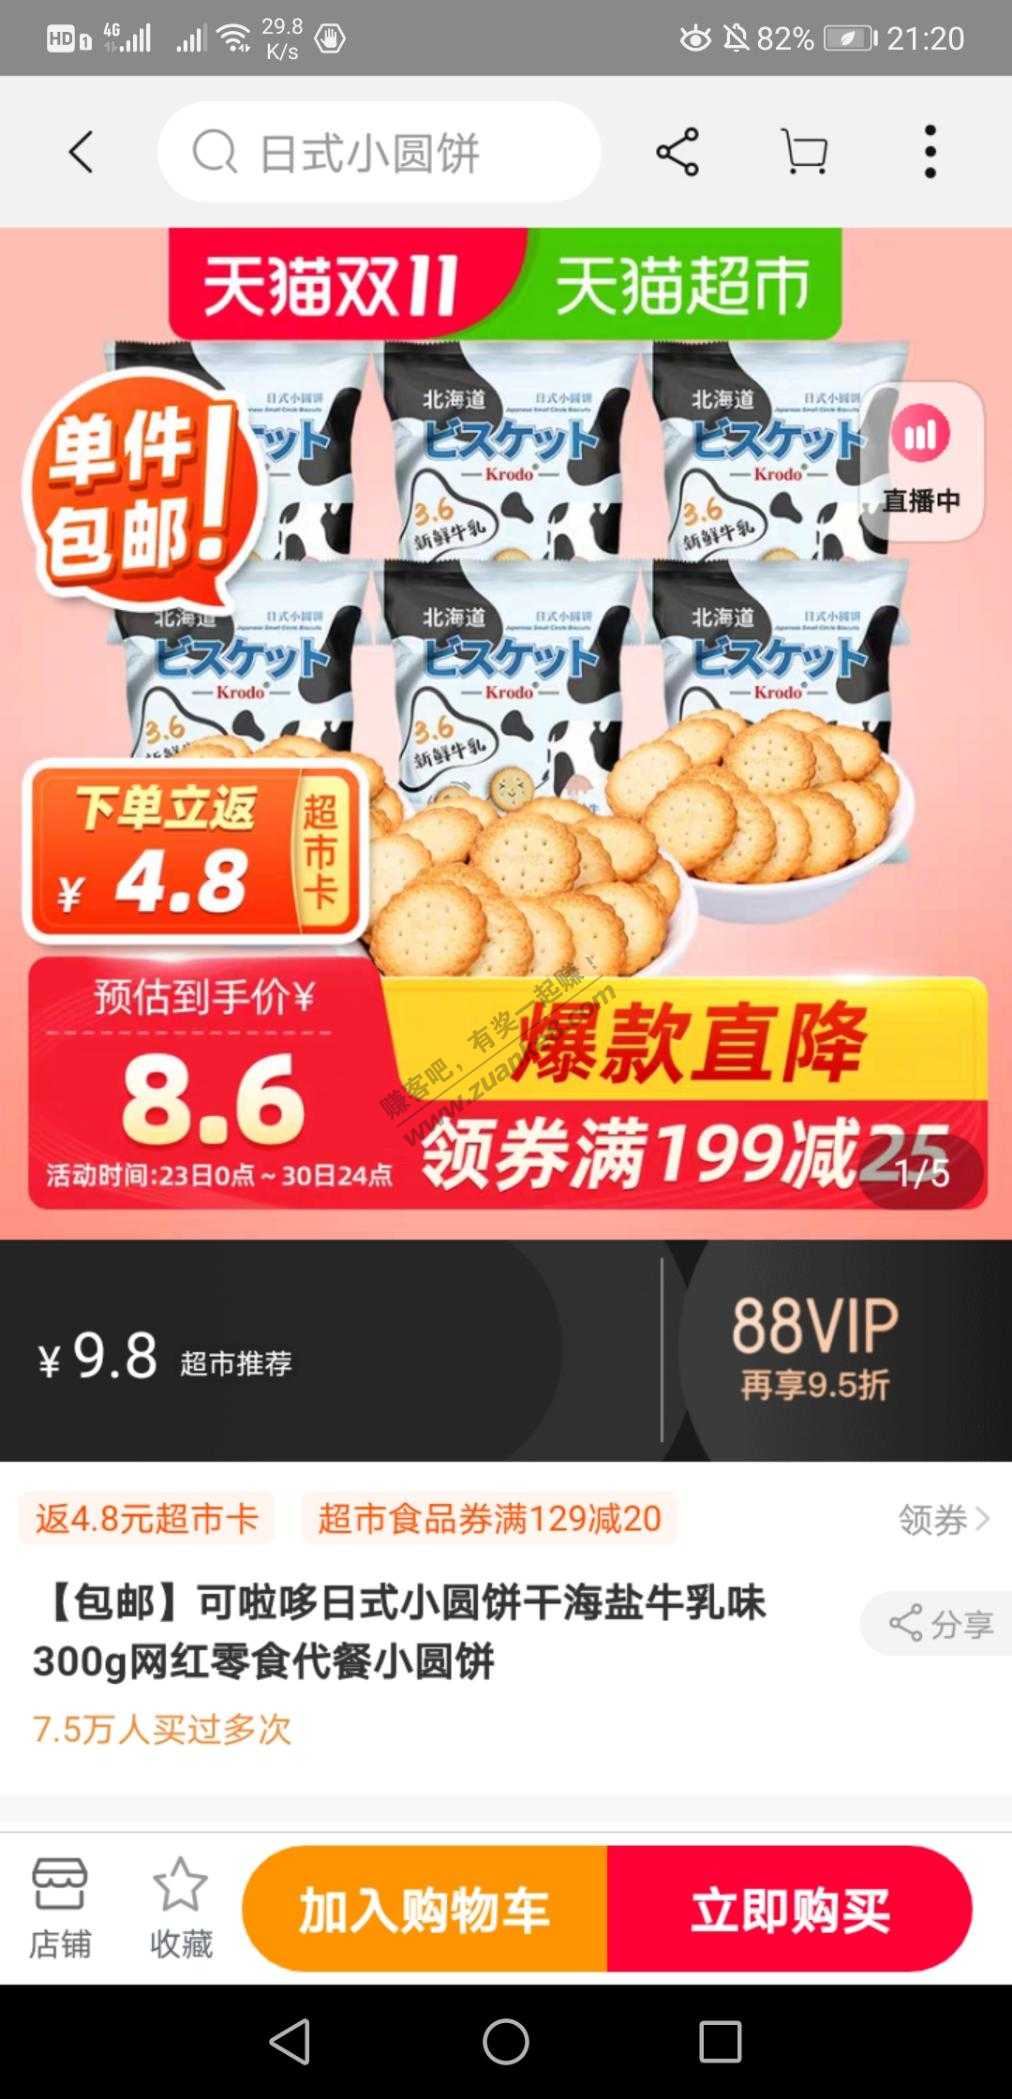 5元天猫超市卡好去处-惠小助(52huixz.com)